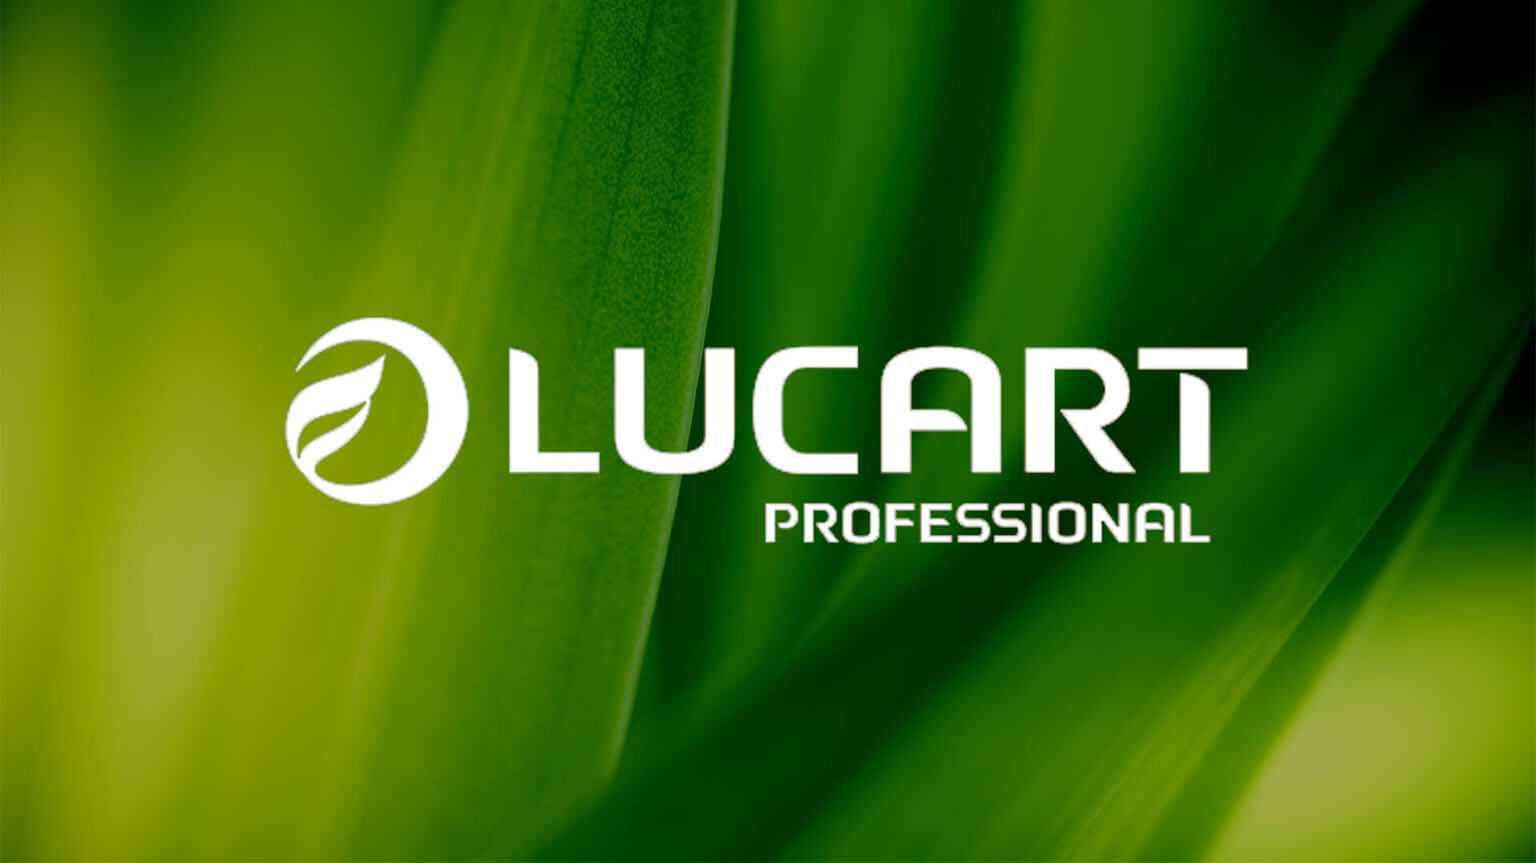 lucart-cch-tagetik-customer